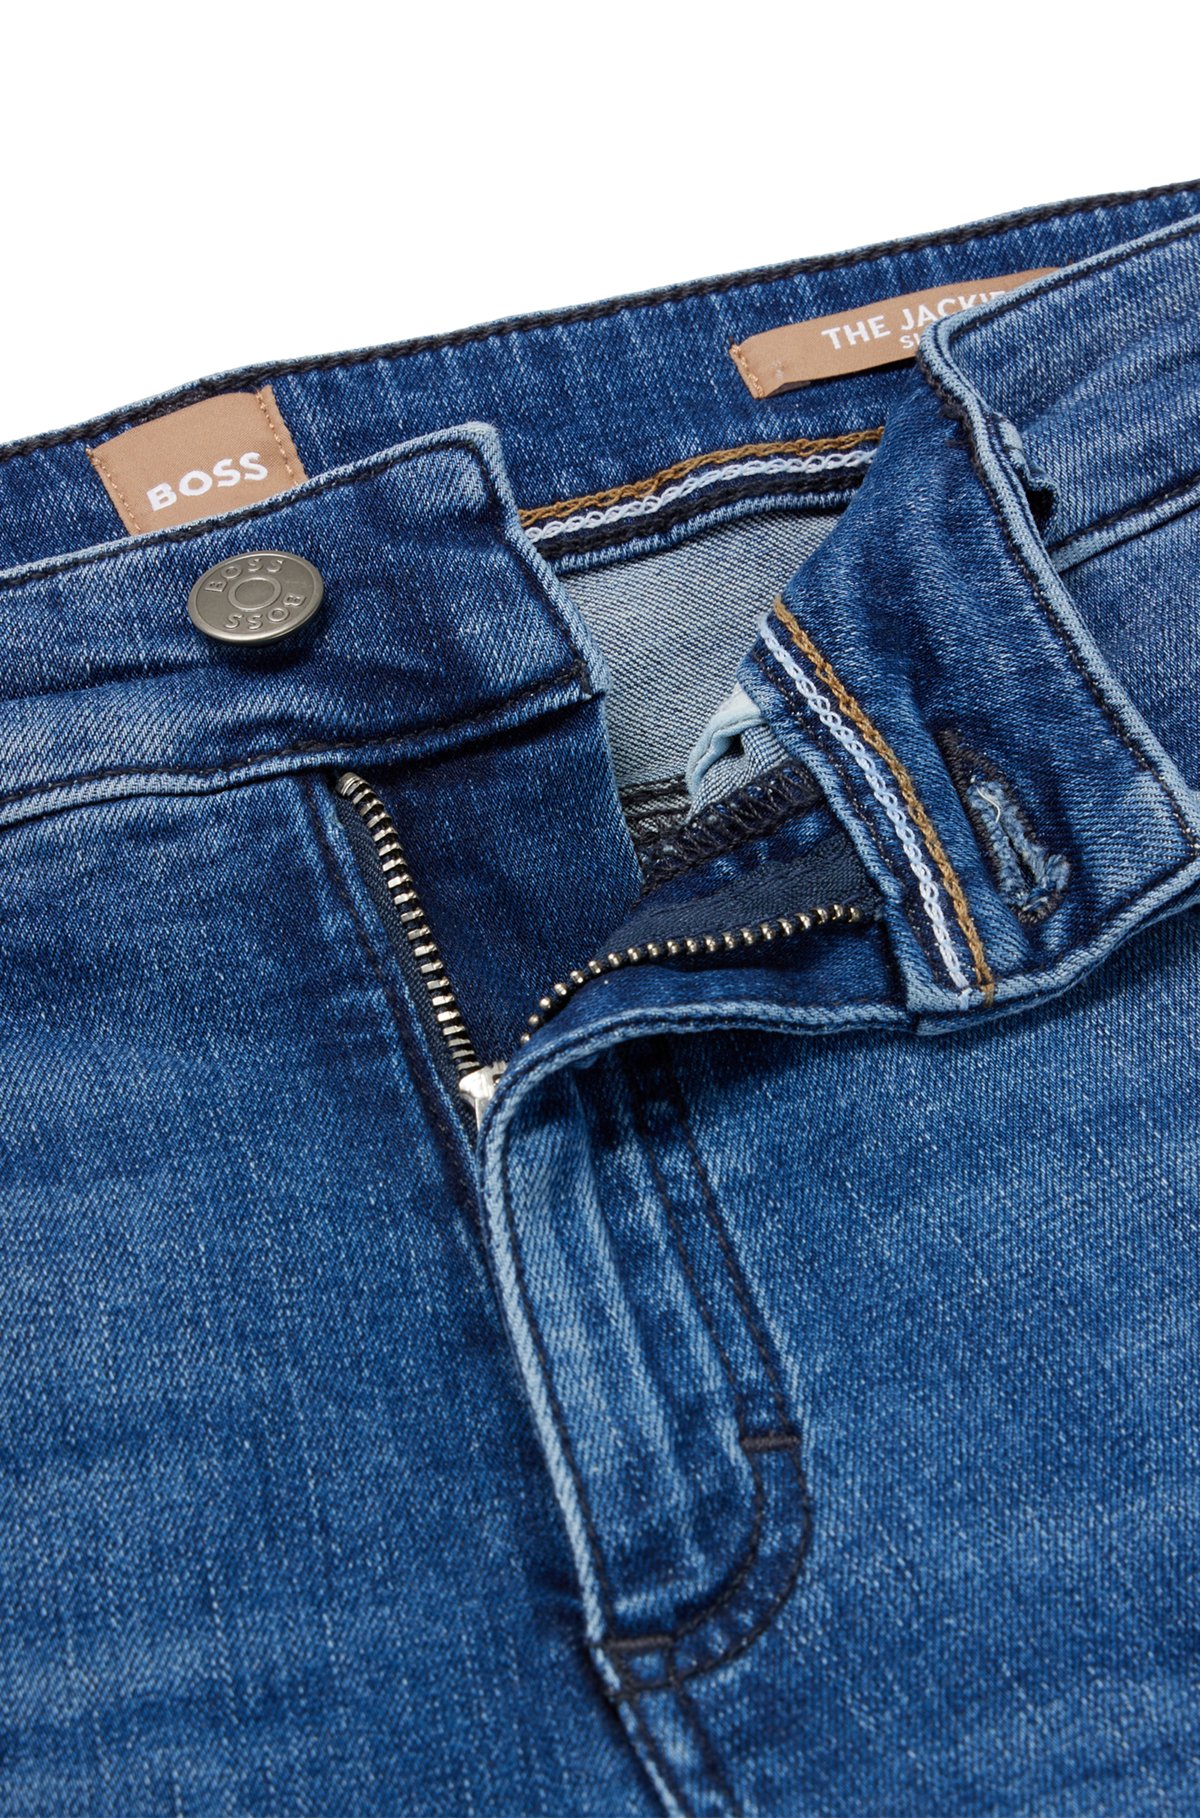 Meerblaue Cropped-Jeans aus Stretch-Denim mit mittlerer Bundhöhe, Hellblau